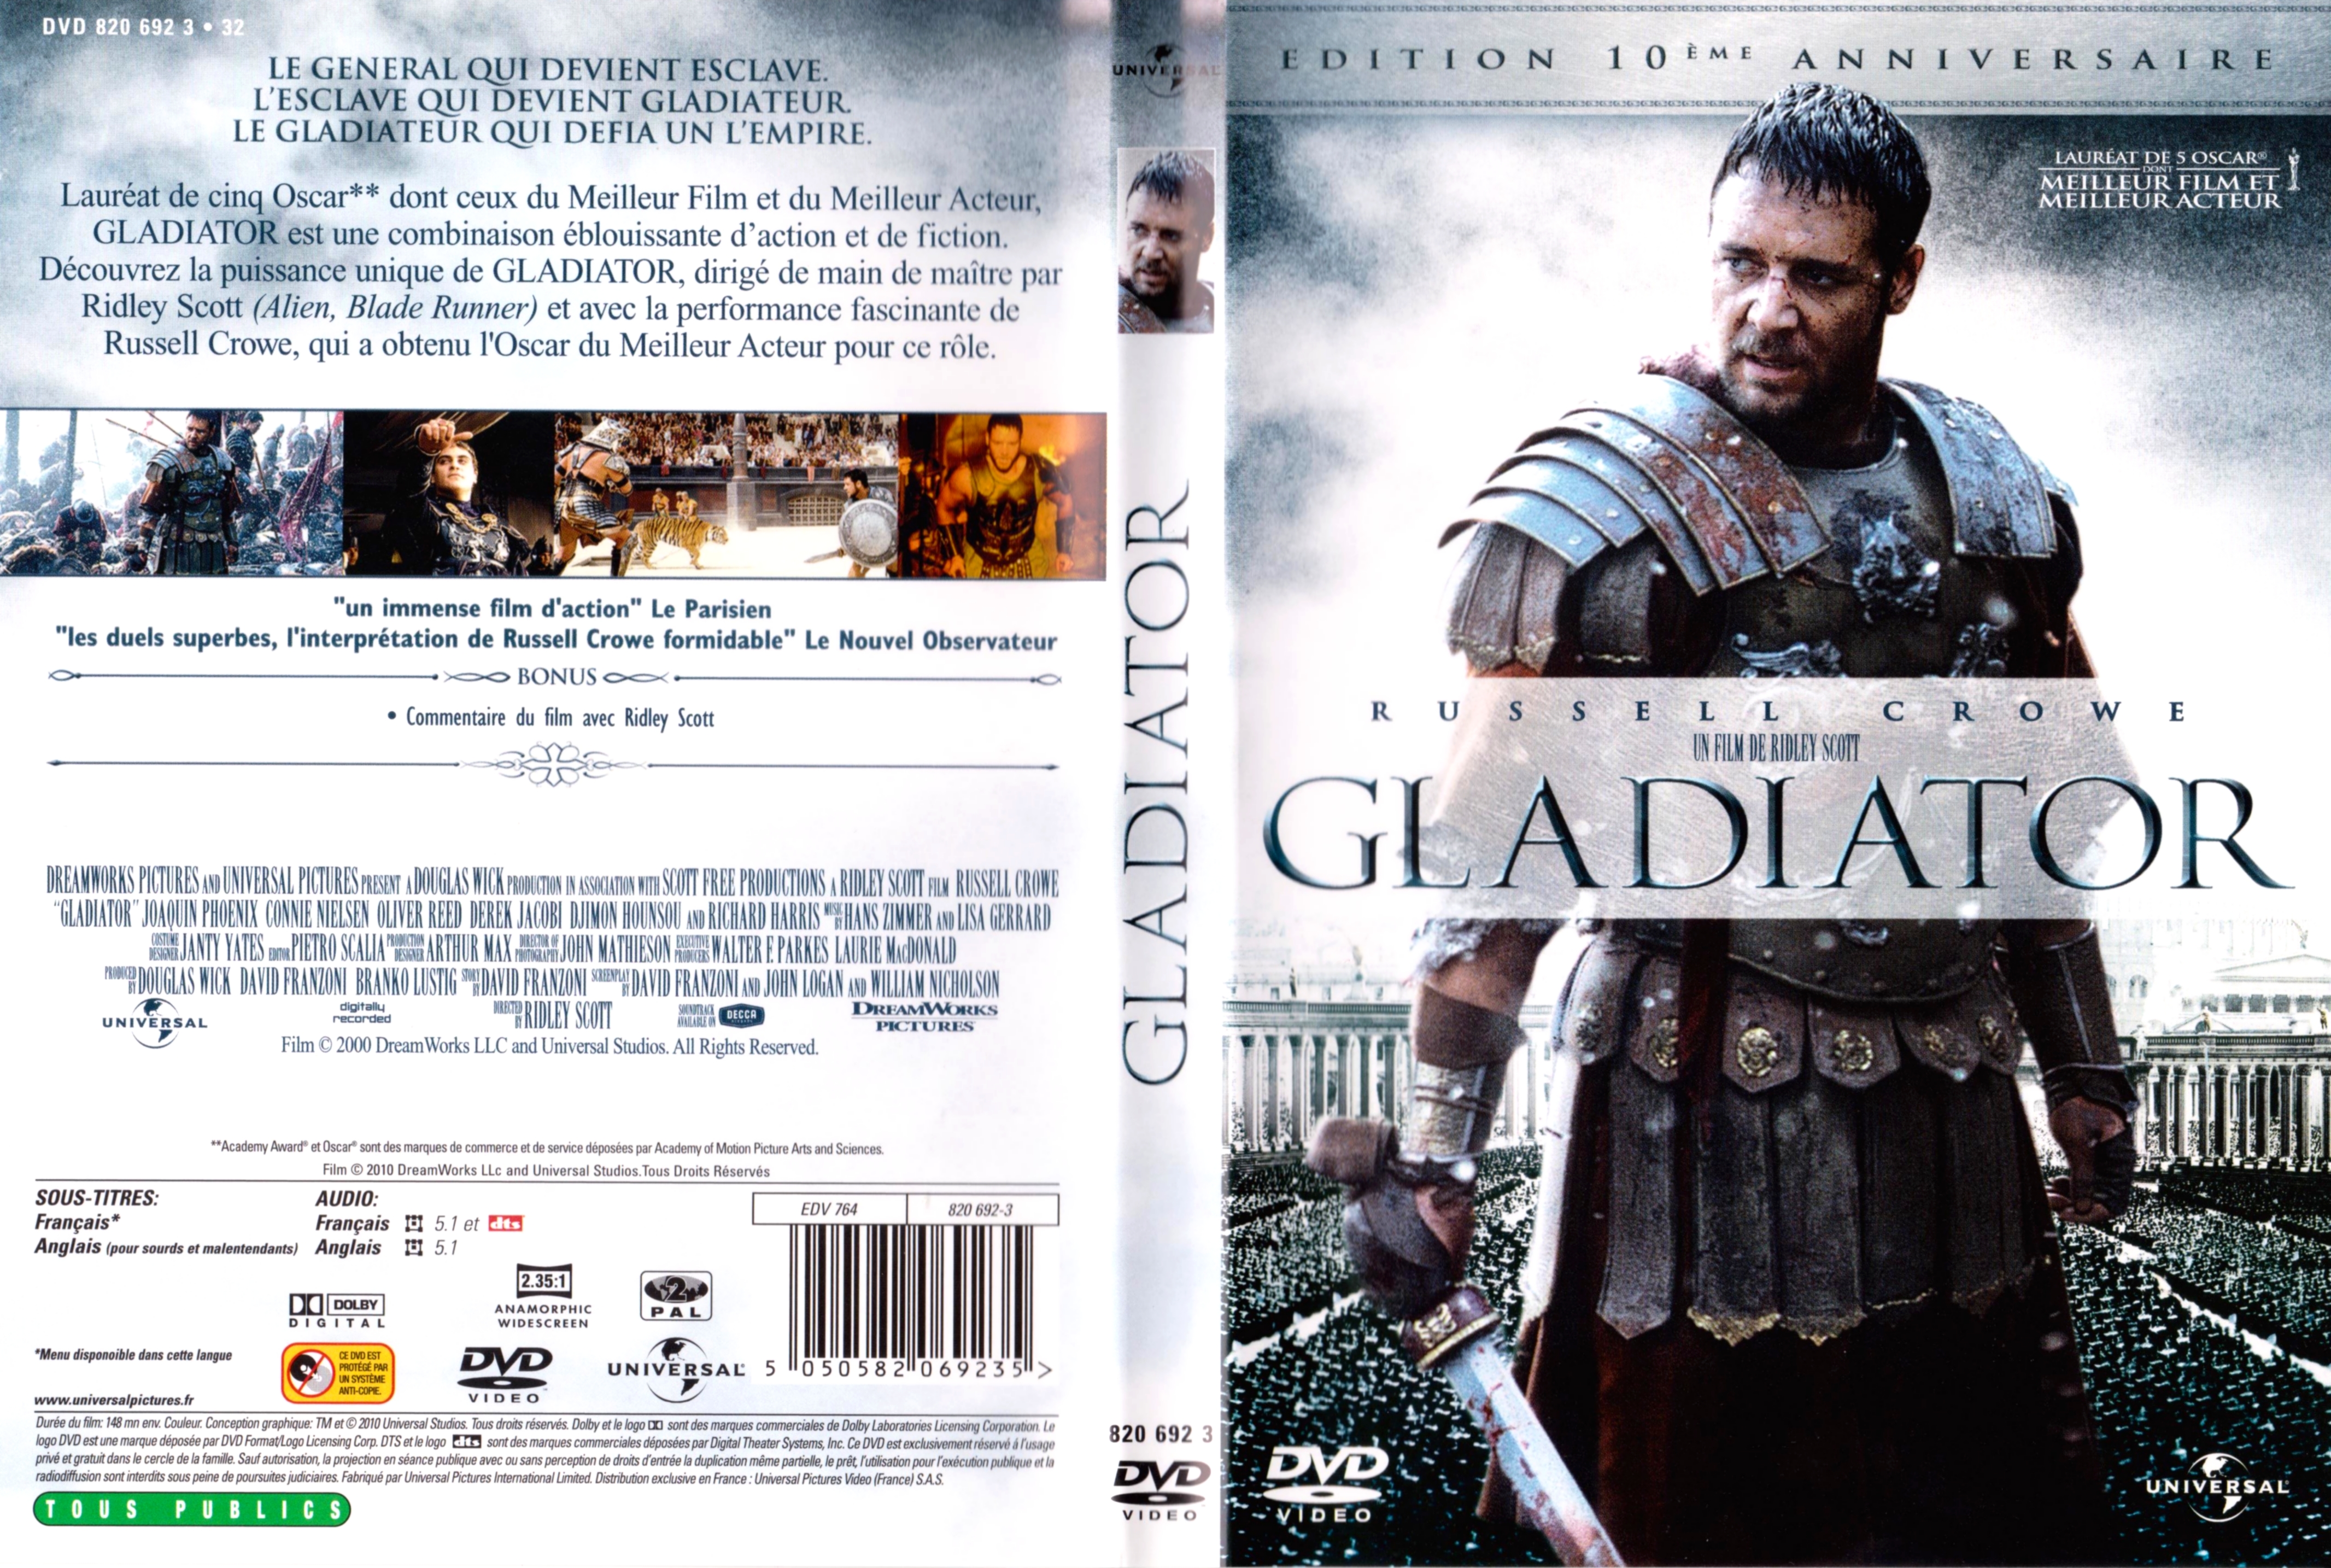 Jaquette DVD Gladiator v6